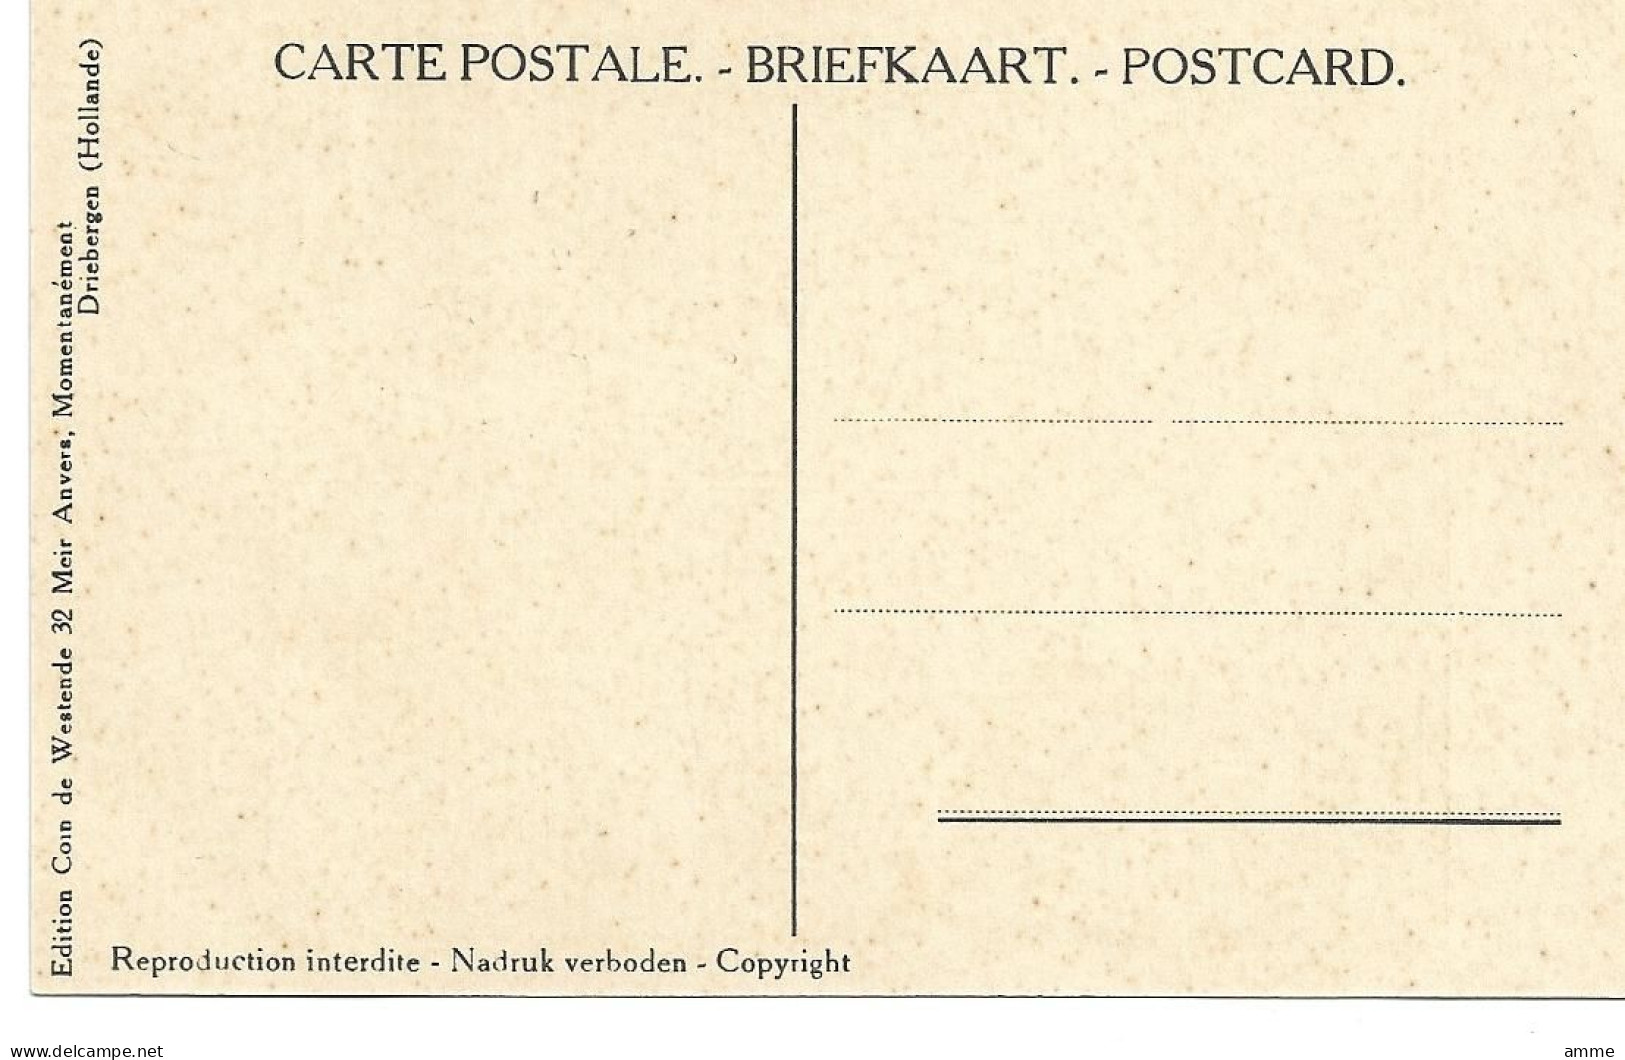 Vintage Postcard    *  Poilus Et Marie-Louise  - Revue Du Front 1915 - Heimat